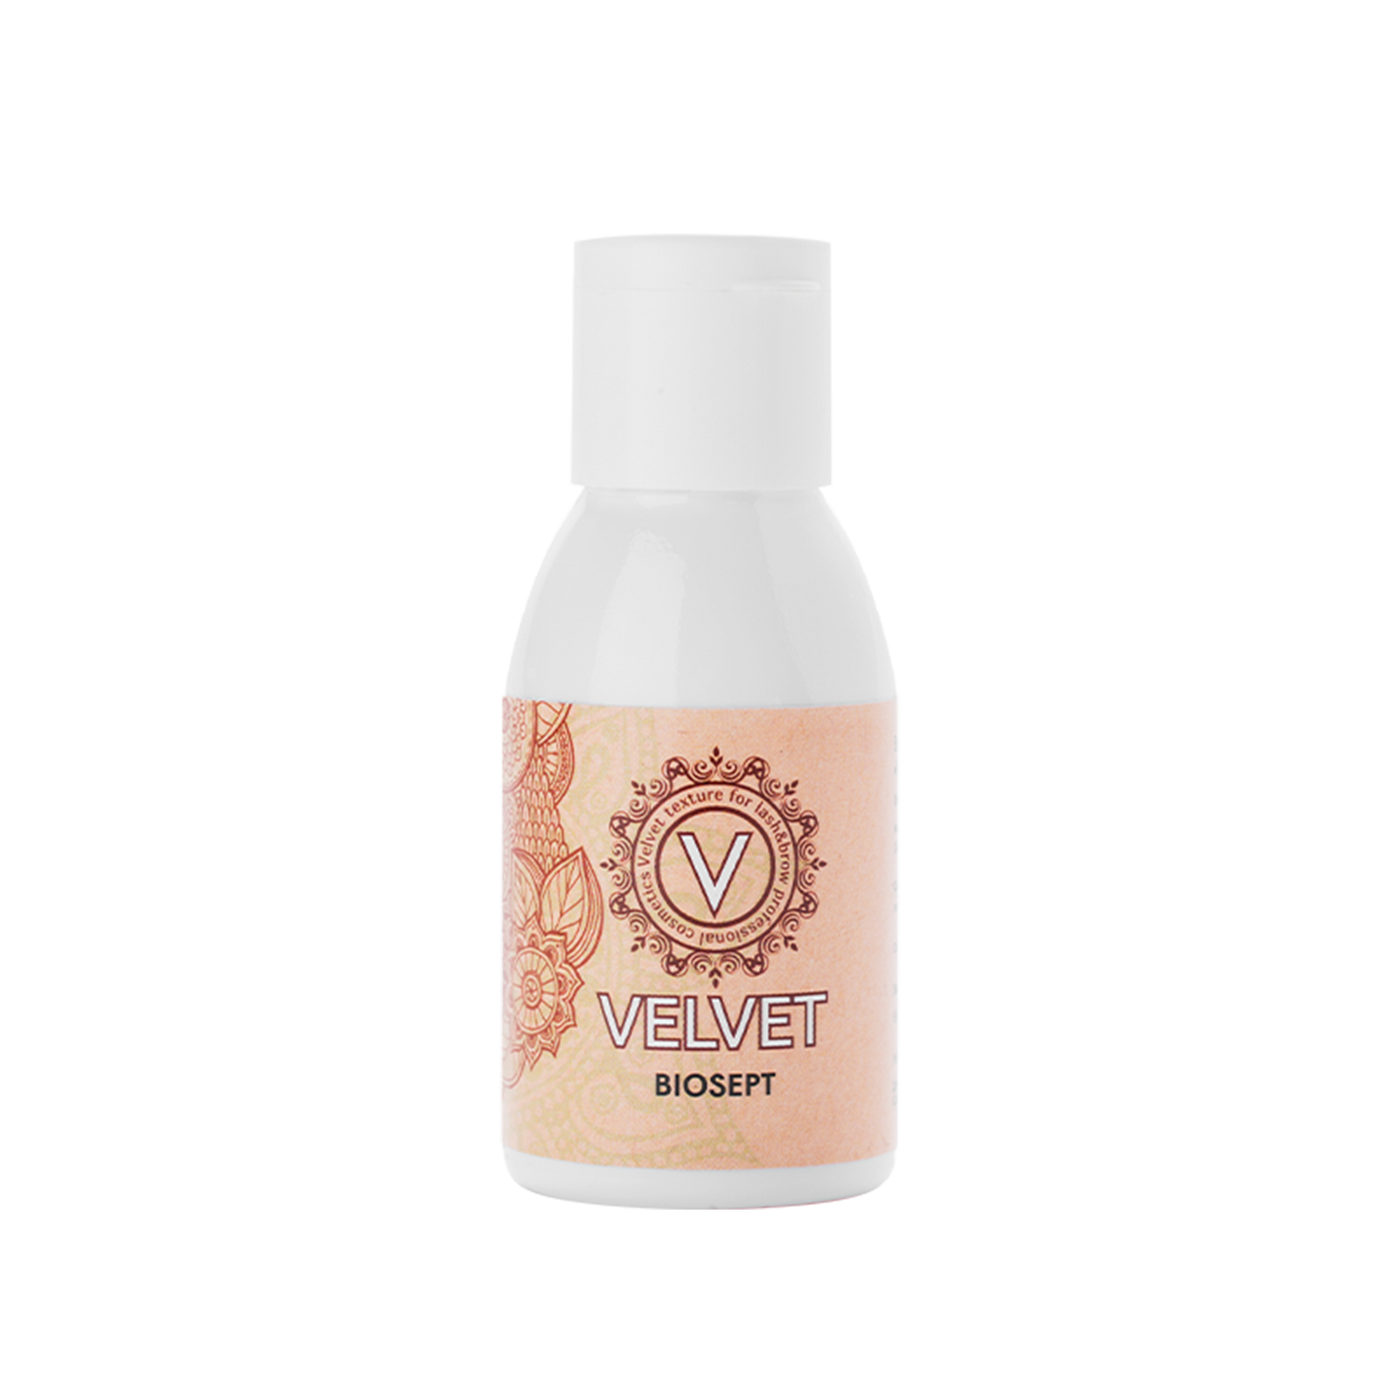 Velvet Vitamin cleansing lotion Biosept, 30 ml - Light Touch Permanent Makeup Studio & Trainings